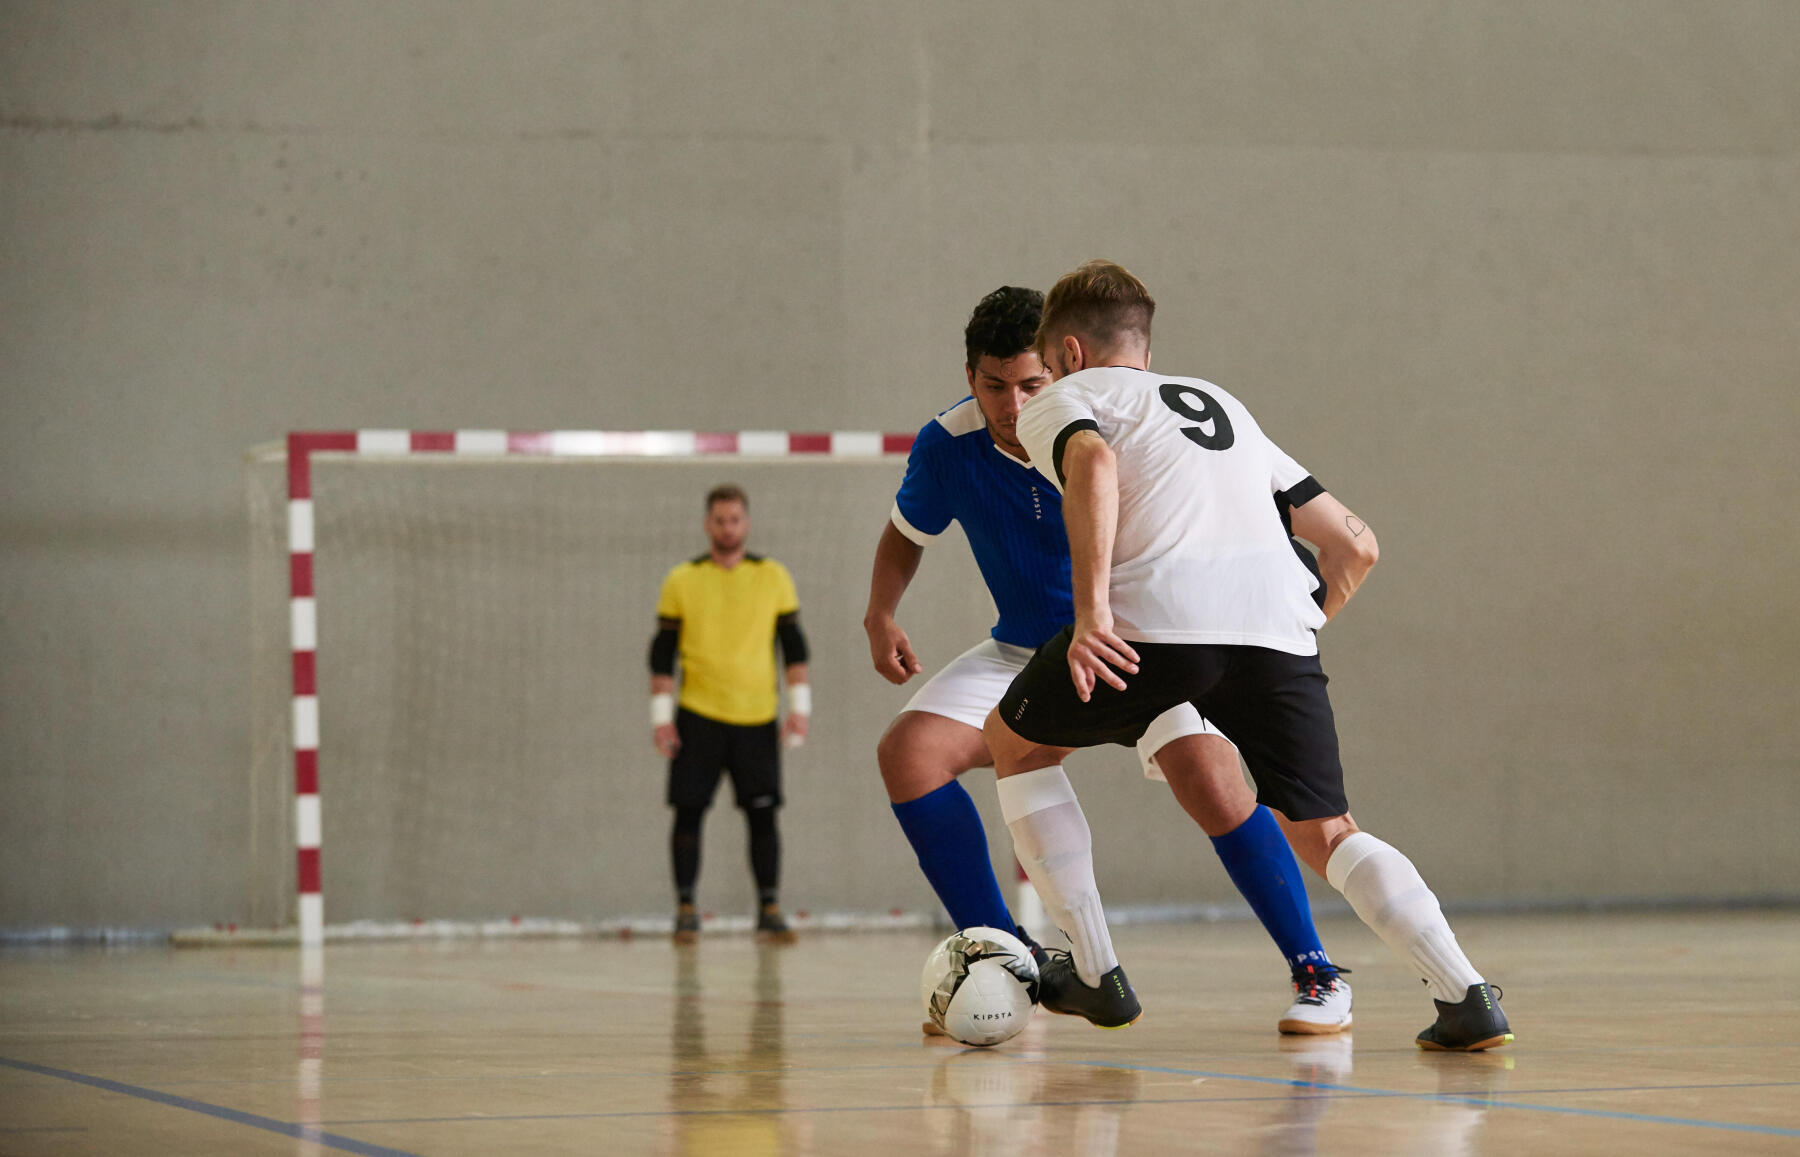 Spécial Futsal: Découvrez et débutez le Futsal